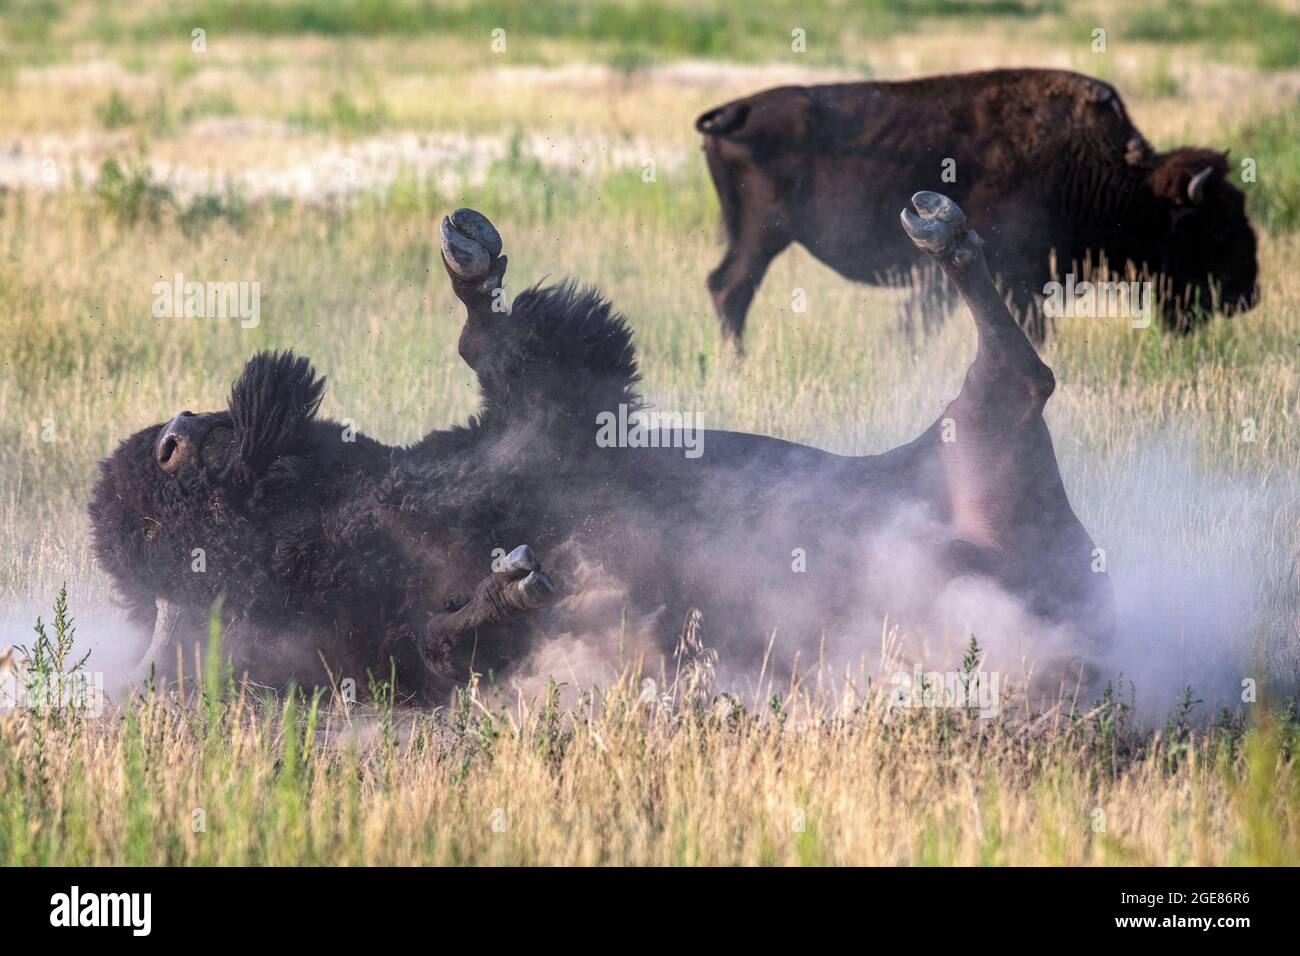 American Bison (Bison bison) roulant dans la terre (waling) - Rocky Mountain Arsenal National Wildlife refuge, Commerce City, près de Denver, Colorado [Imag Banque D'Images